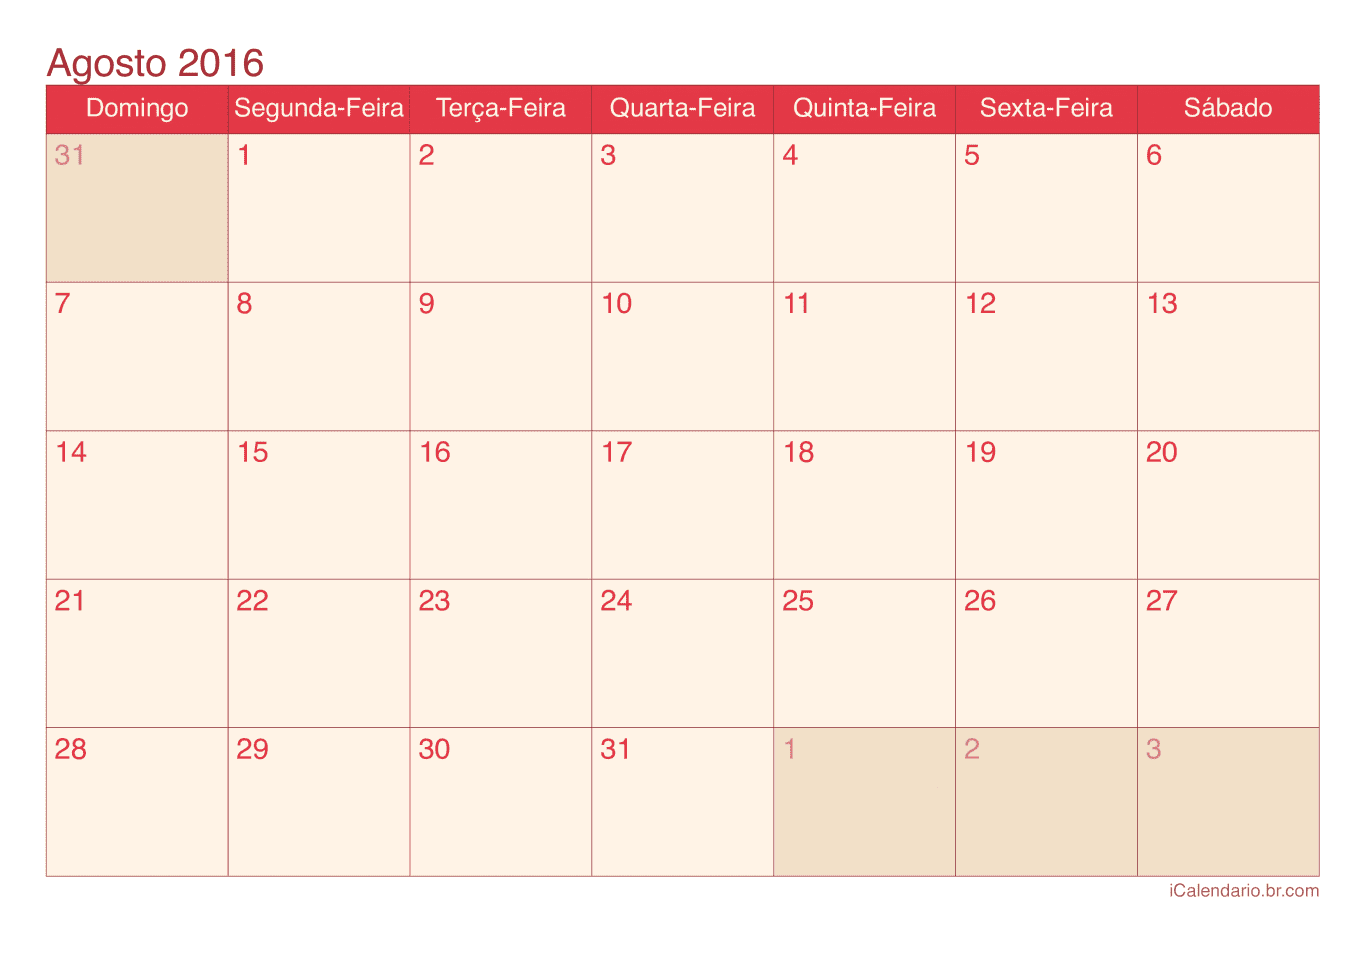 Calendário de agosto 2016 - Cherry